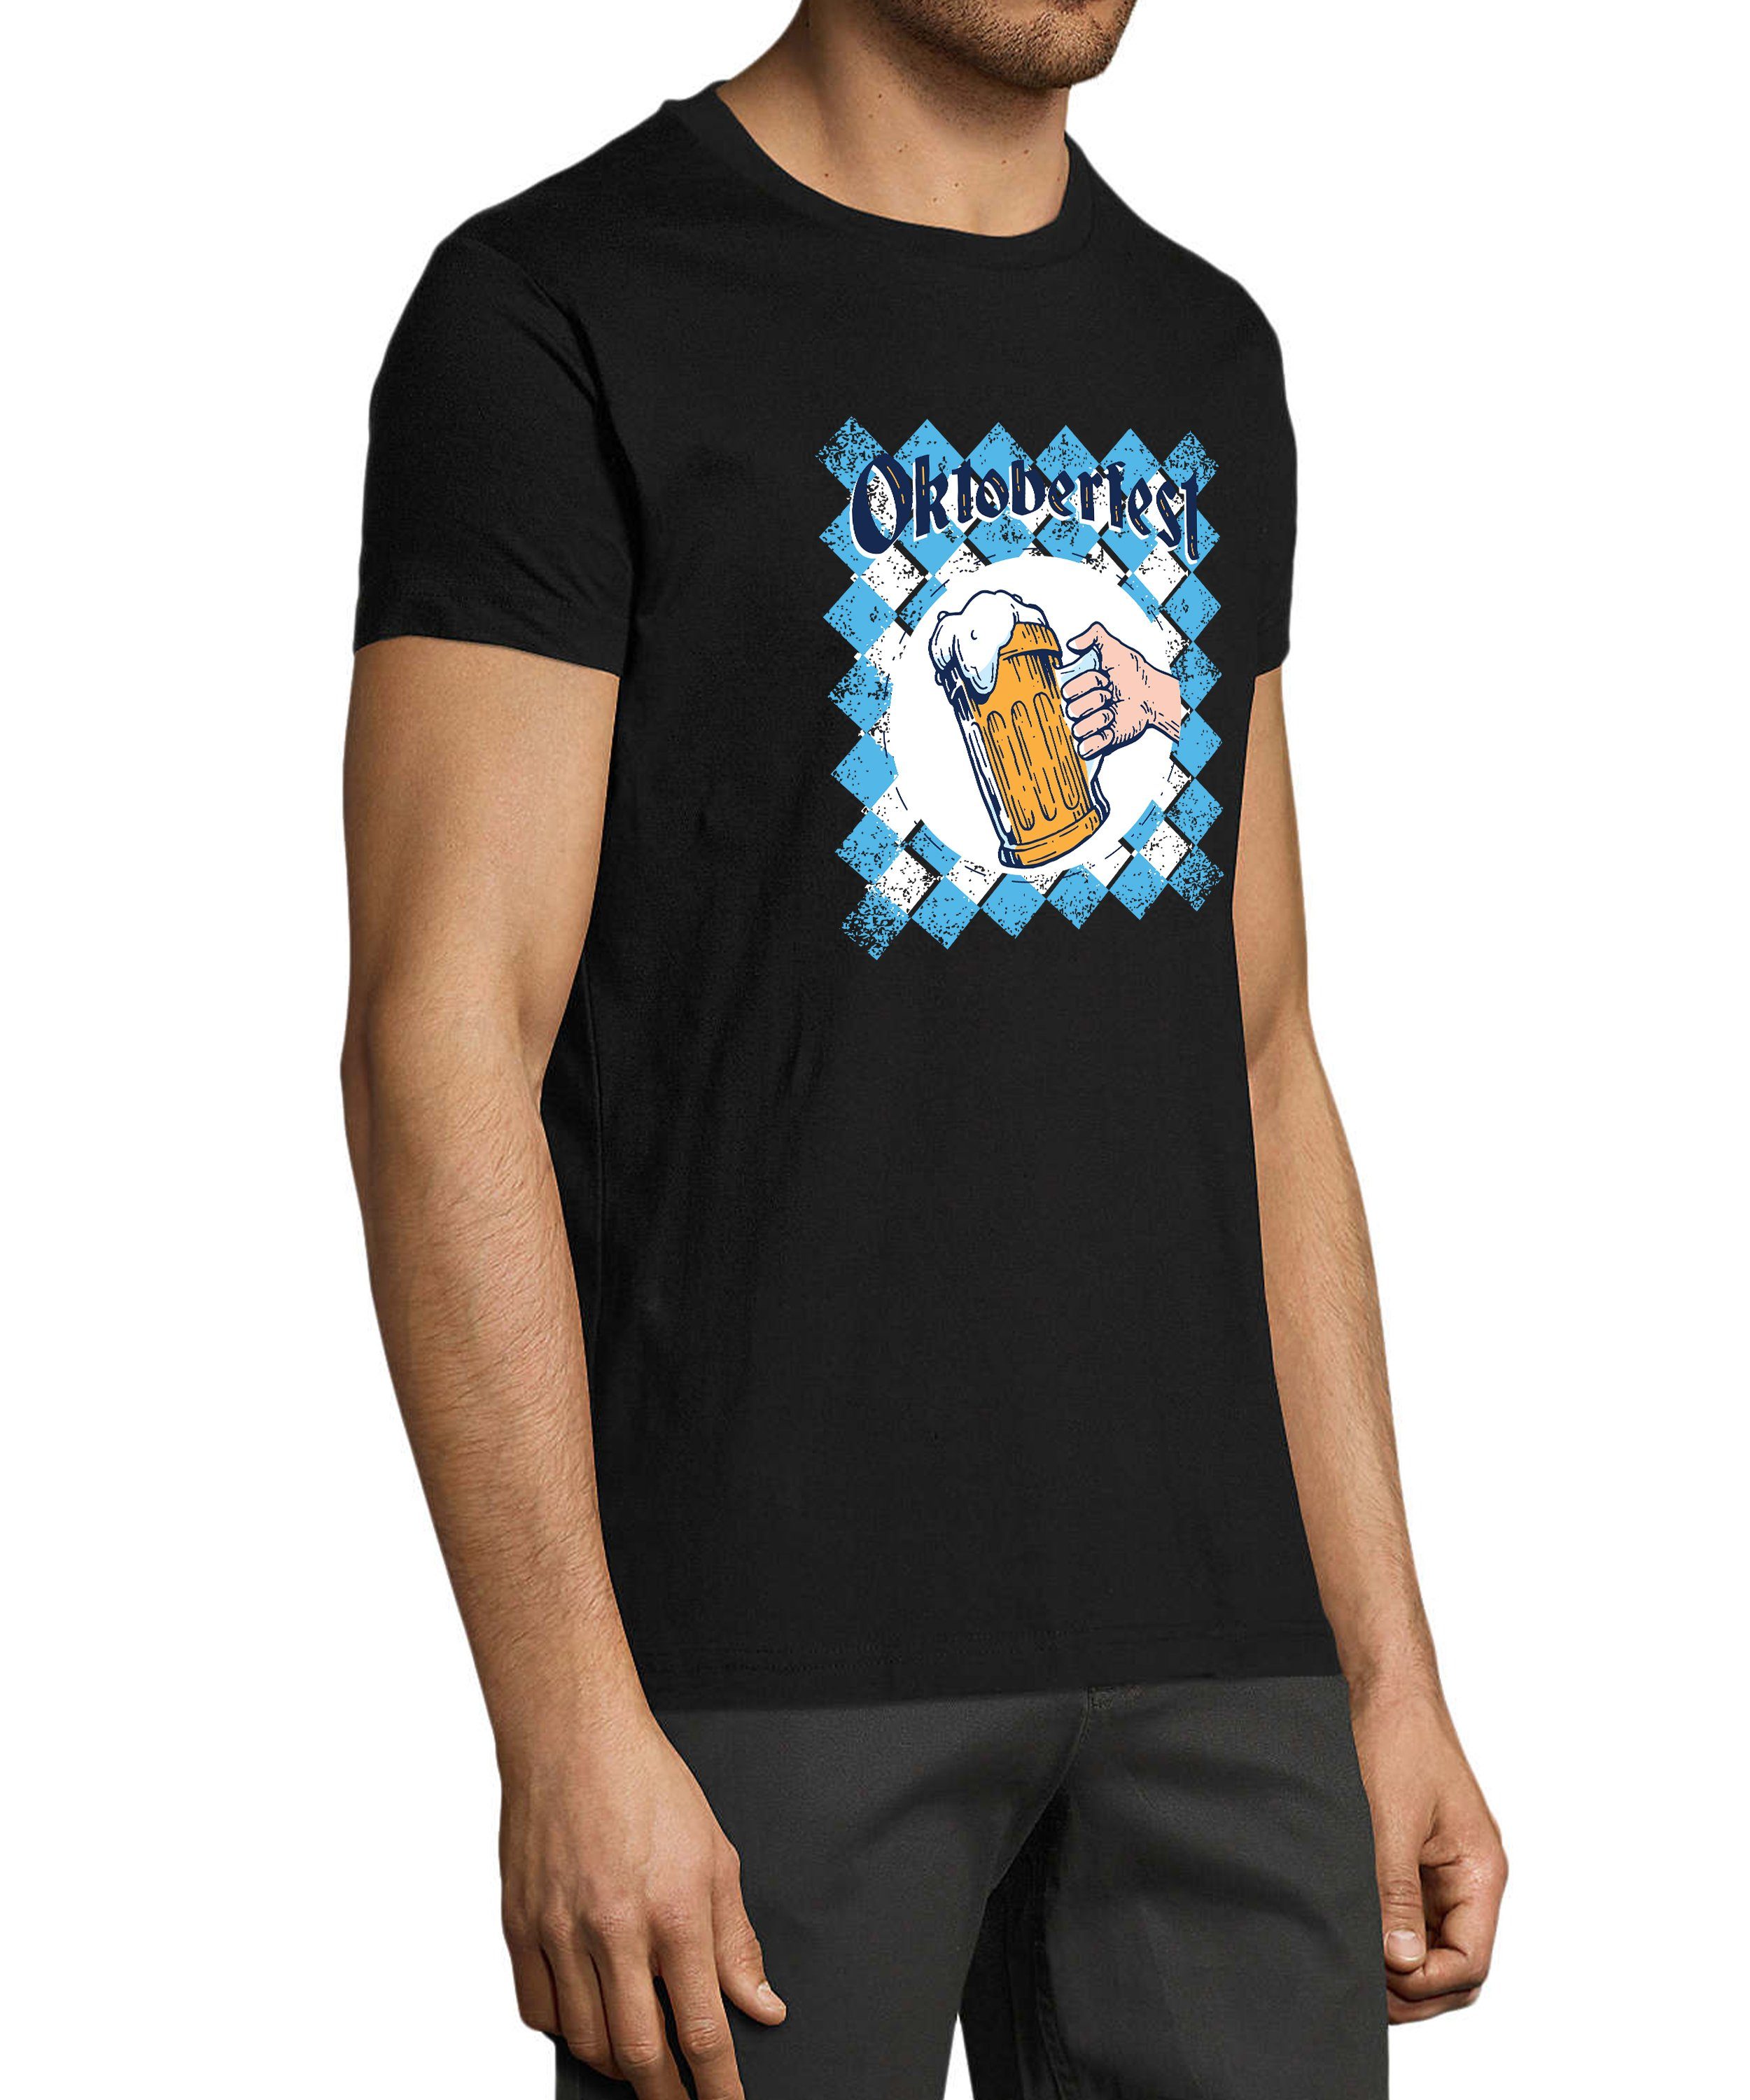 MyDesign24 T-Shirt Herren Regular i319 schwarz Oktoberfest T-Shirt Aufdruck Shirt Fit, Baumwollshirt - Trinkshirt mit Bierglas Print